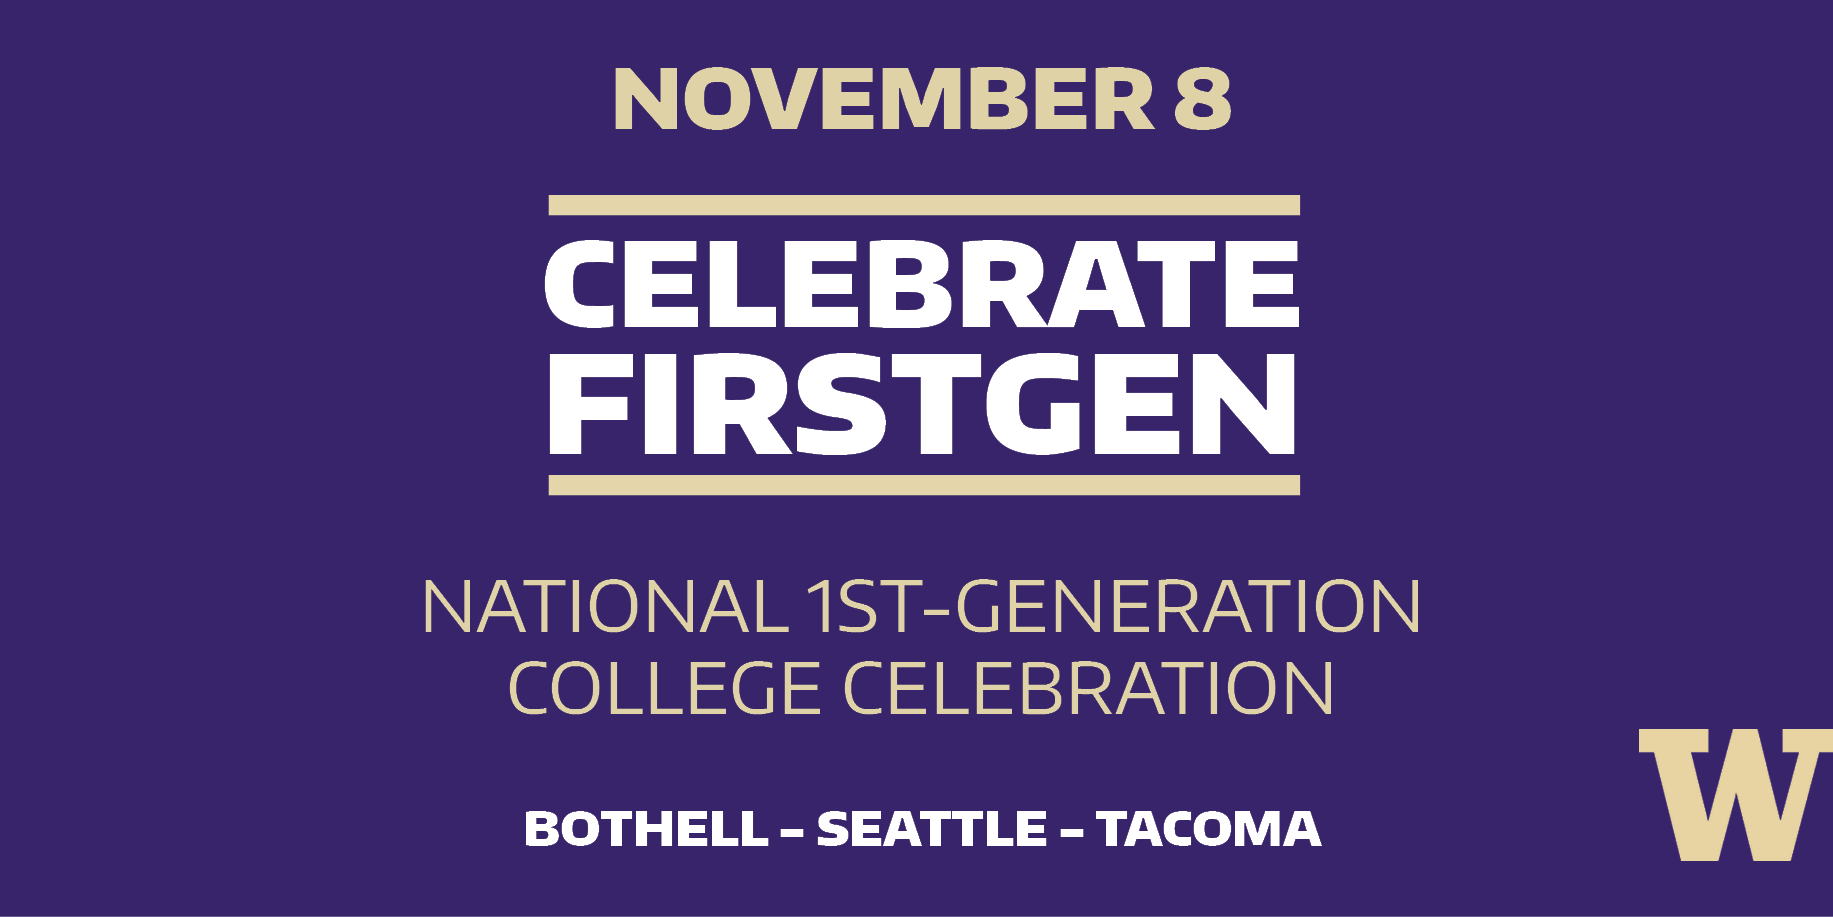 National 1st-Generation College Celebration on November 8 banner